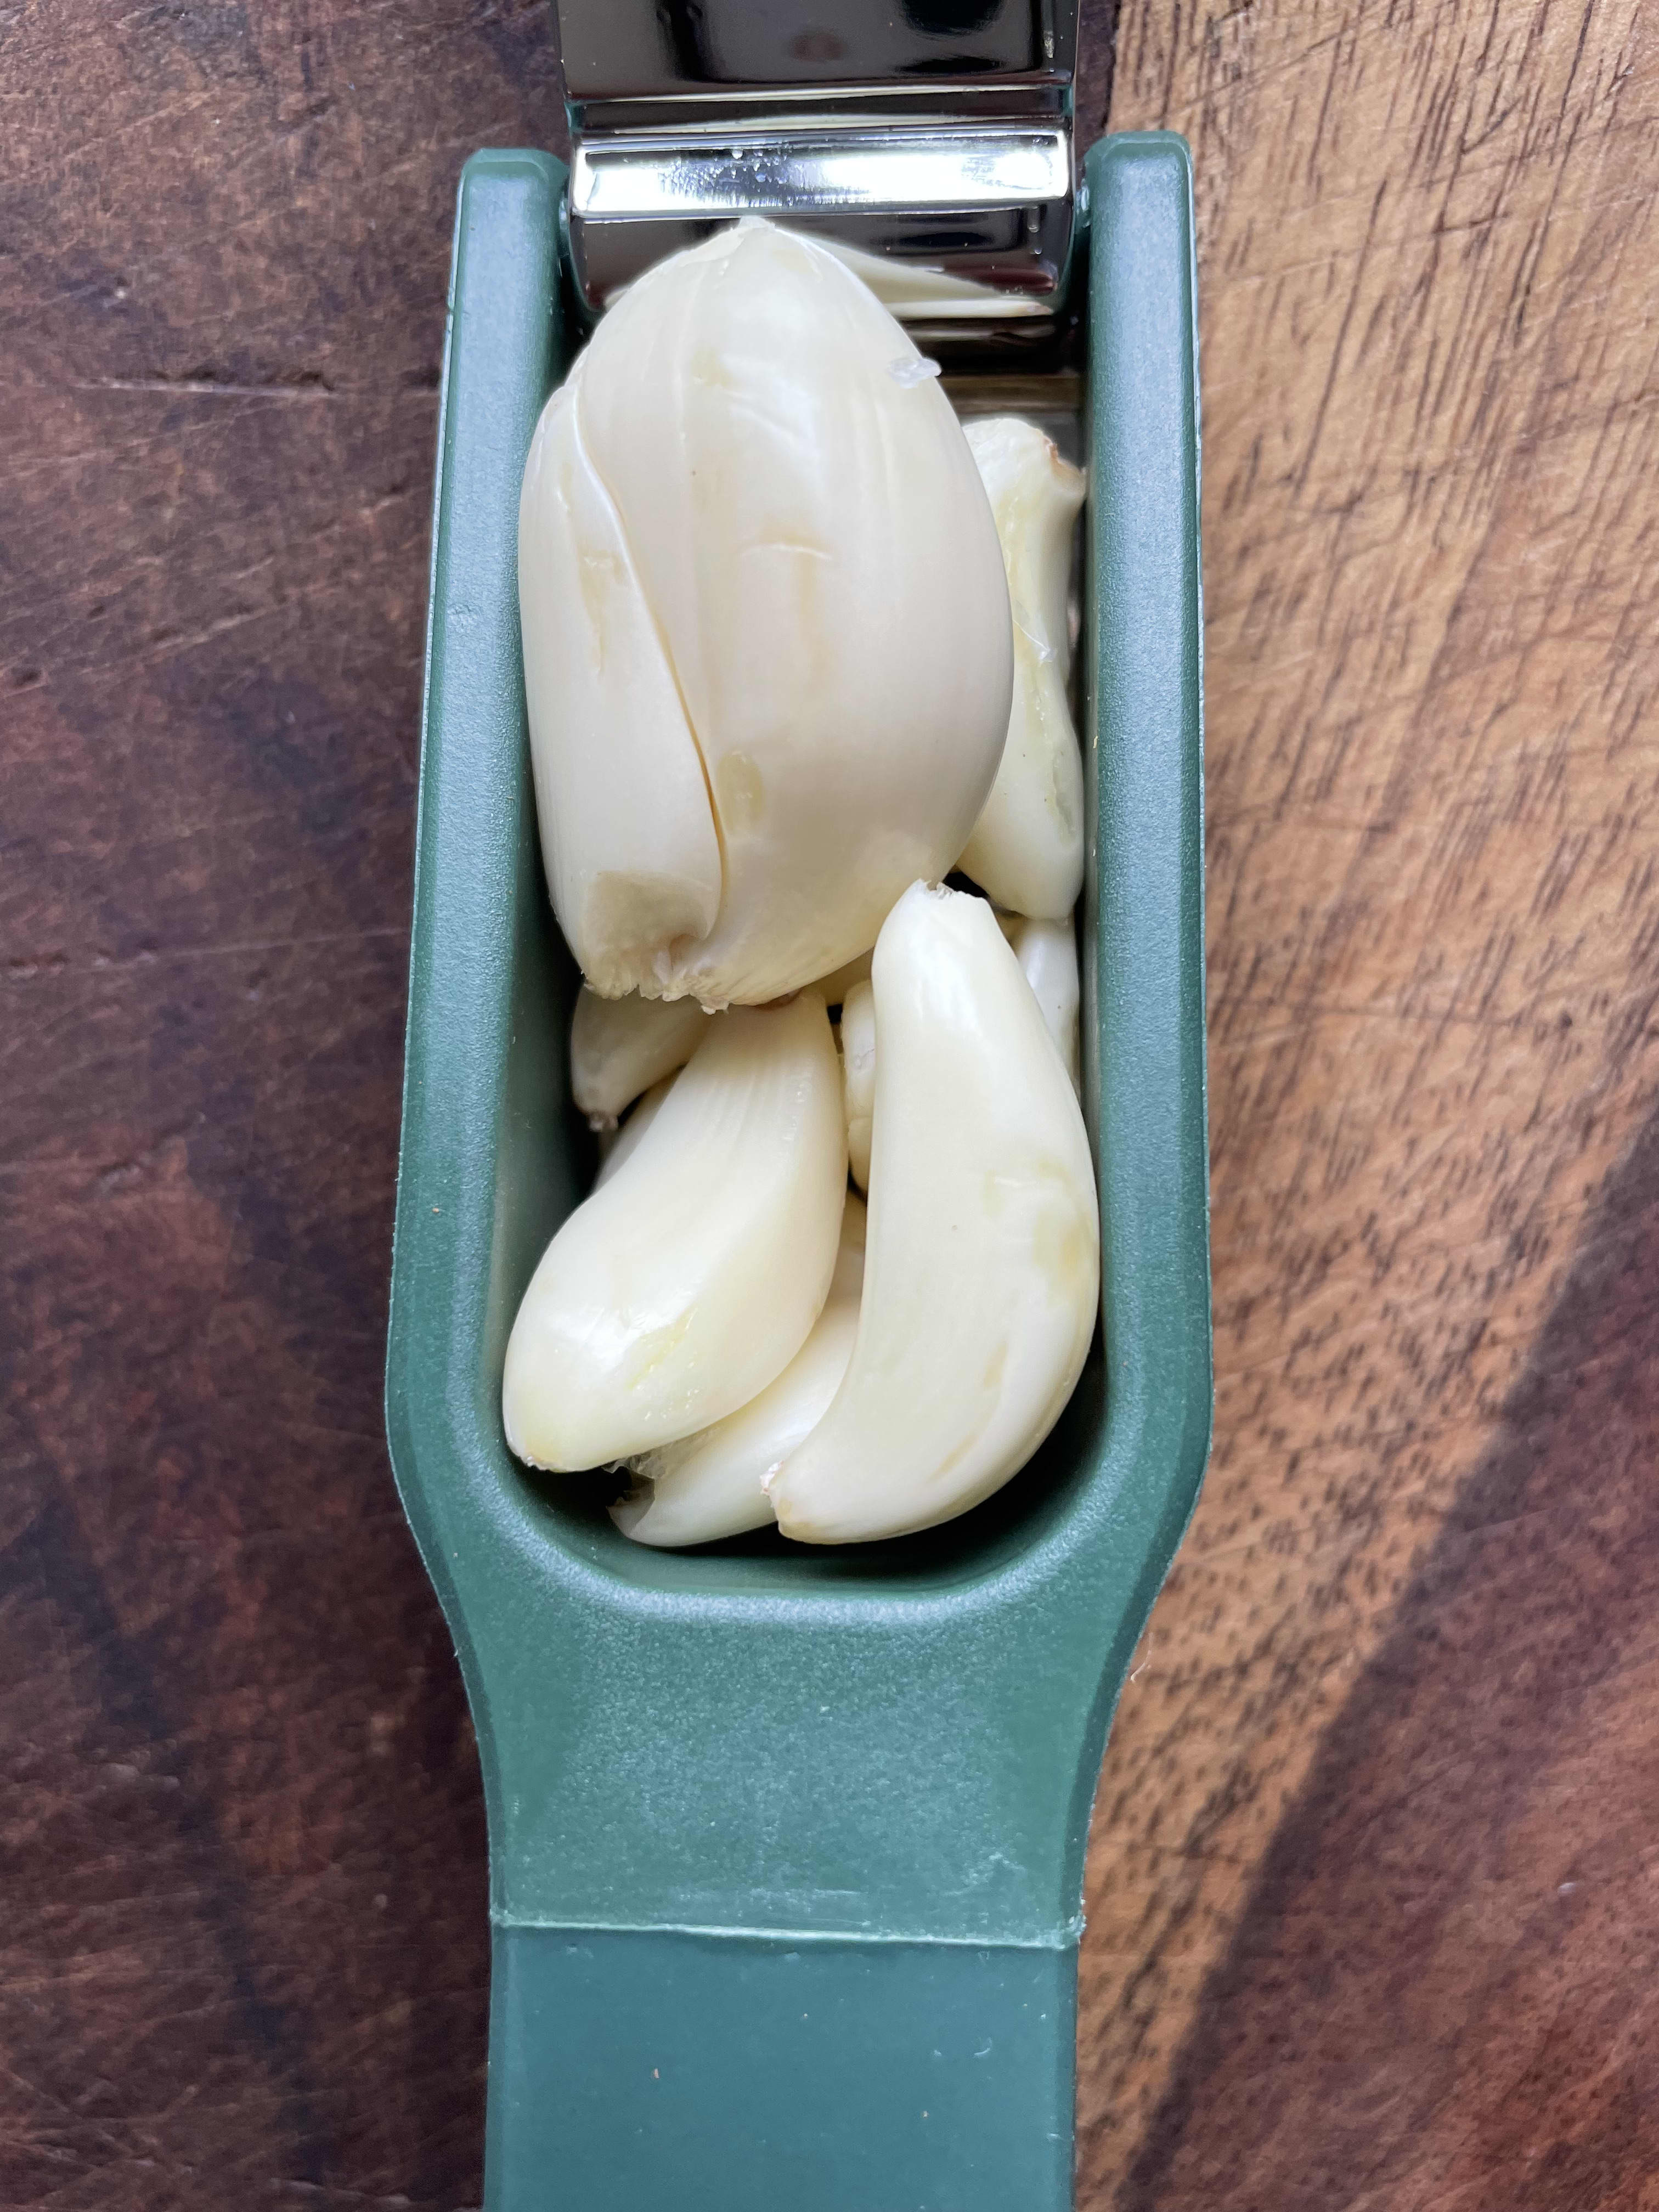 Williams Sonoma Garlic Press, Garlic Tools